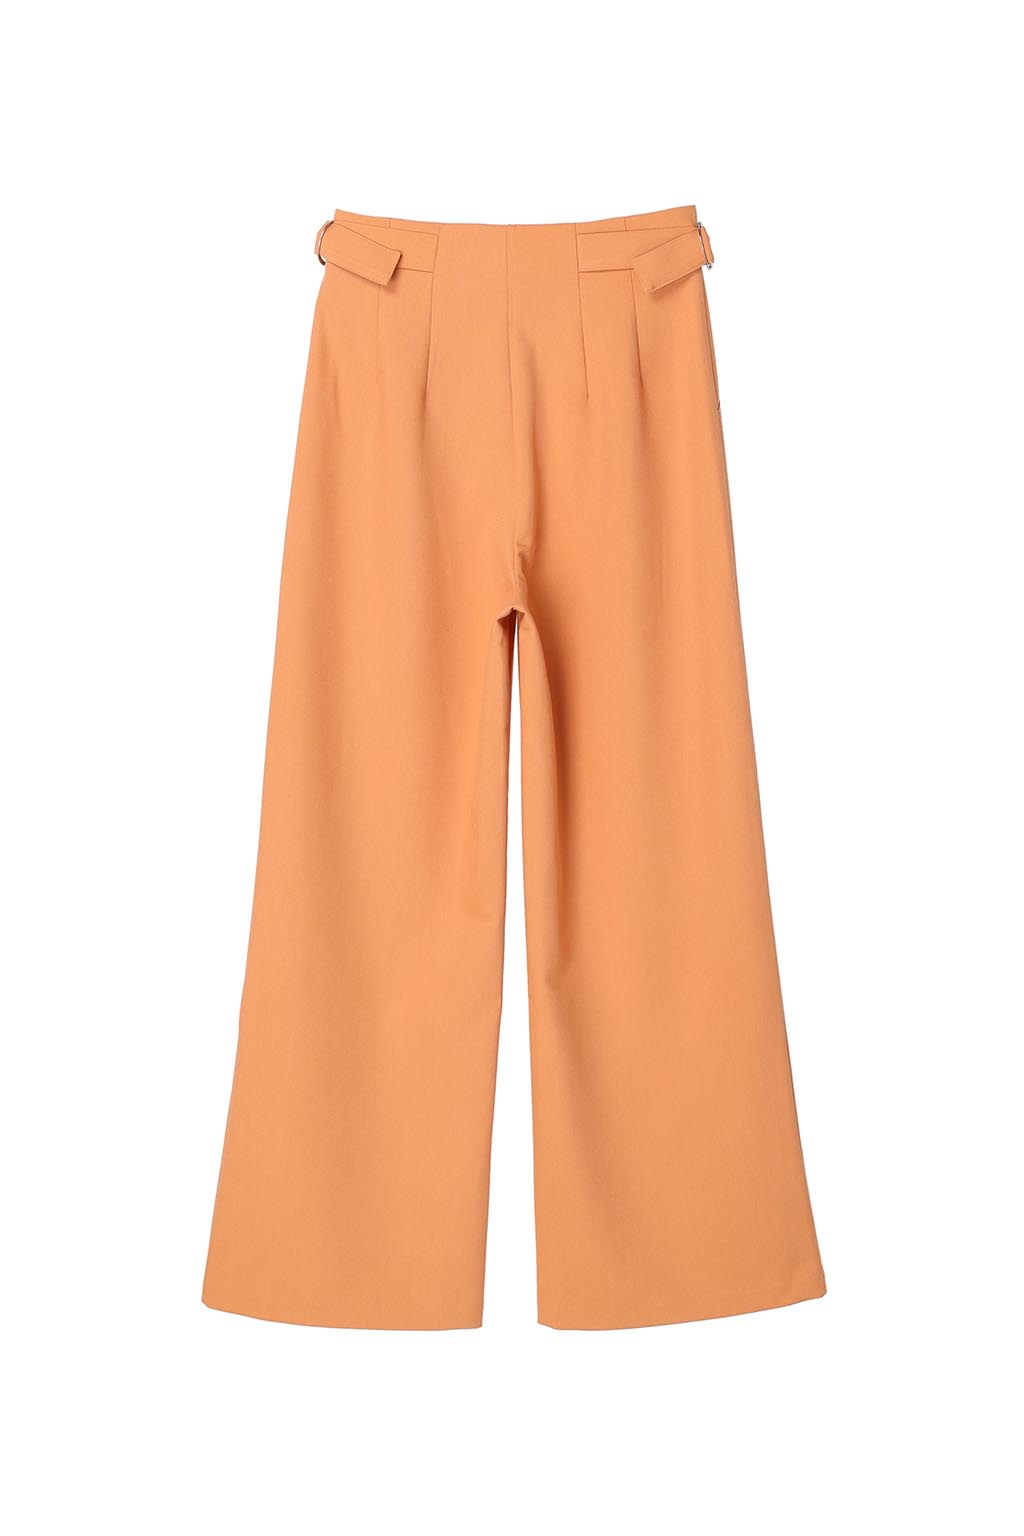 Waist Belted Color Pants Orange 8